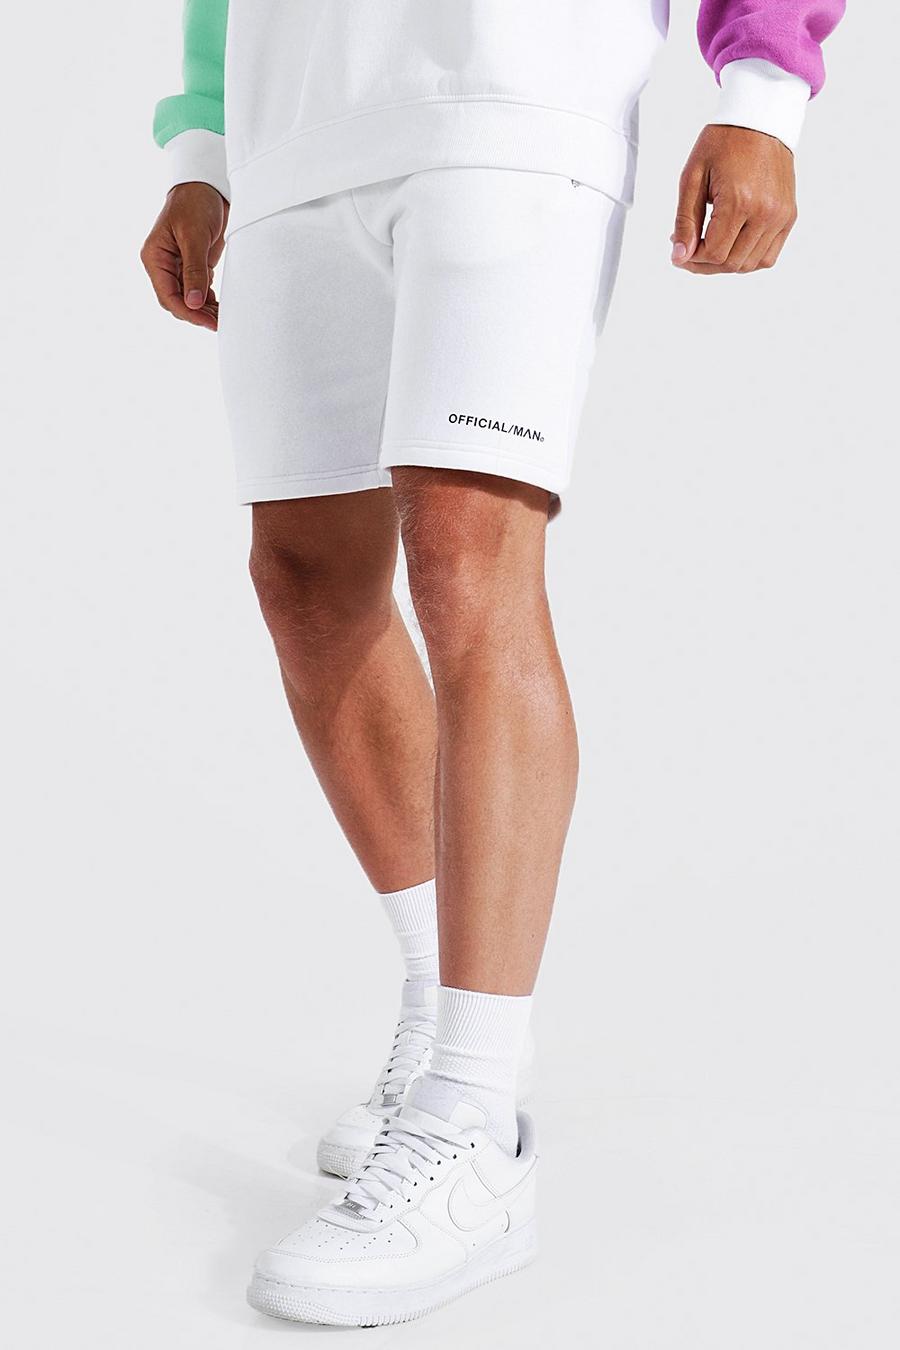 Pantalones cortos de tela jersey MAN Official ajustados con cintura elástica, White bianco image number 1